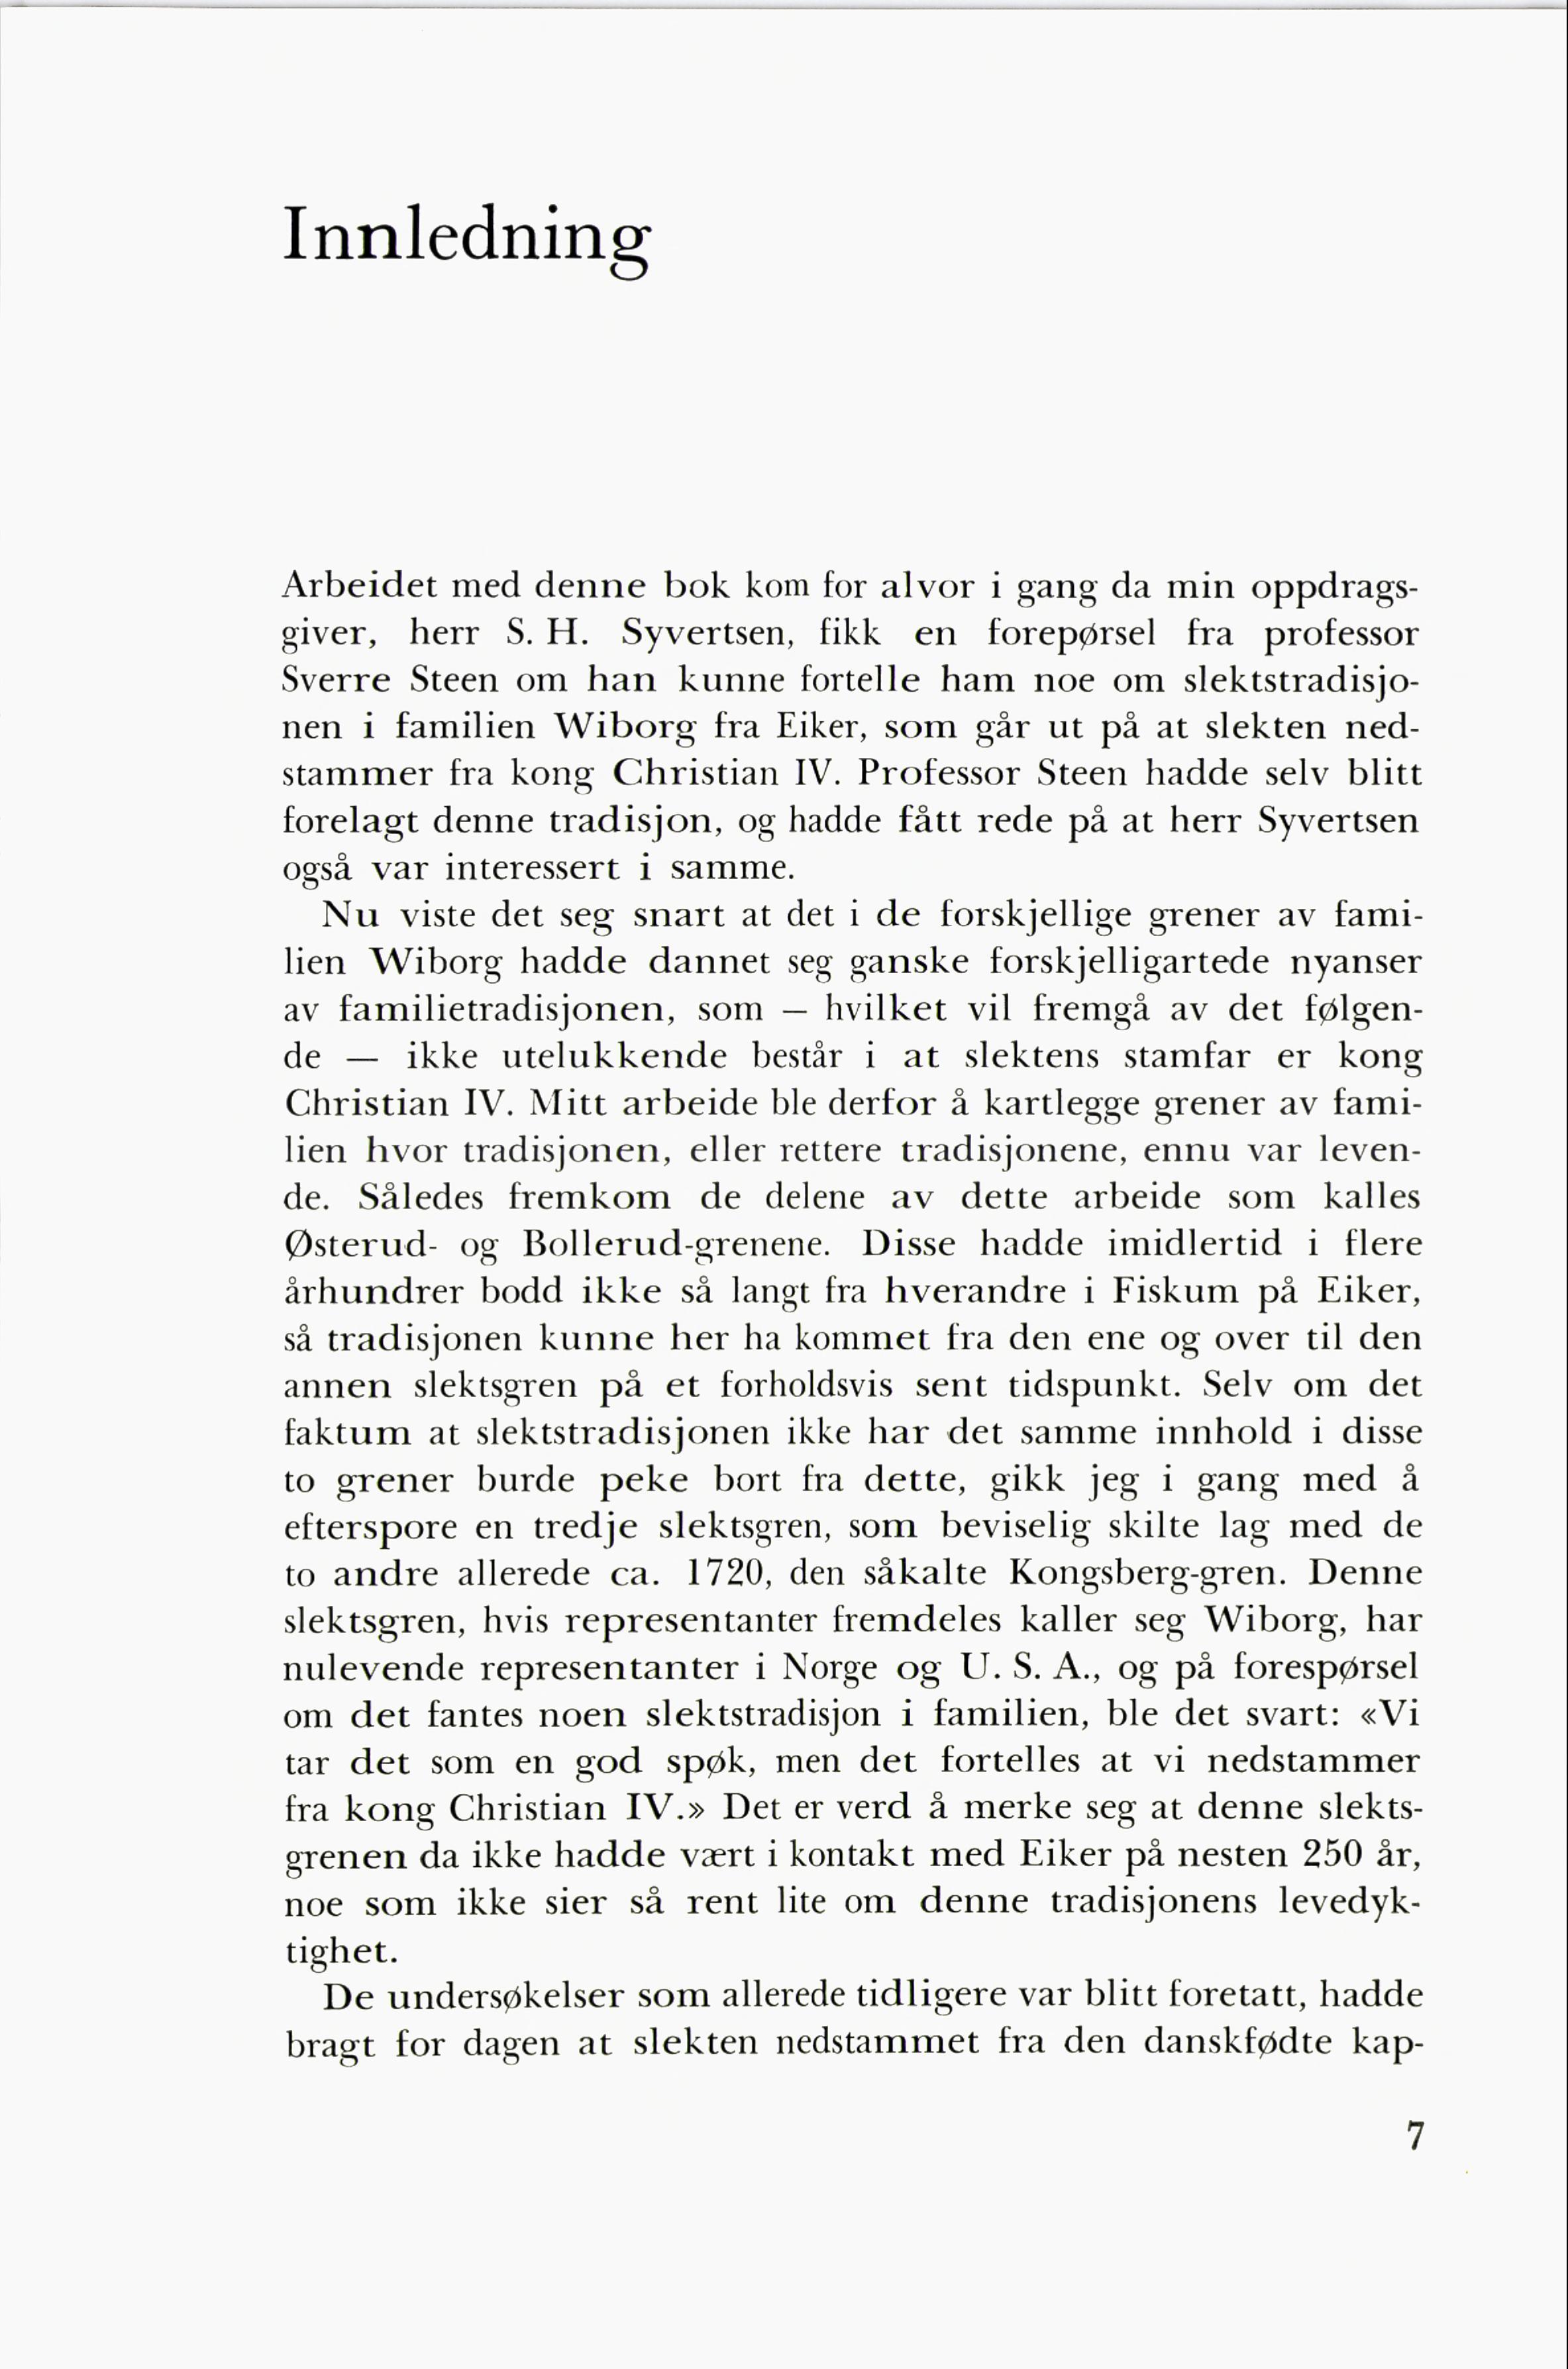 Grener av Eiker-slekten Wiborg (Yngvar Hauge, 1966) - Side 7-11.pdf